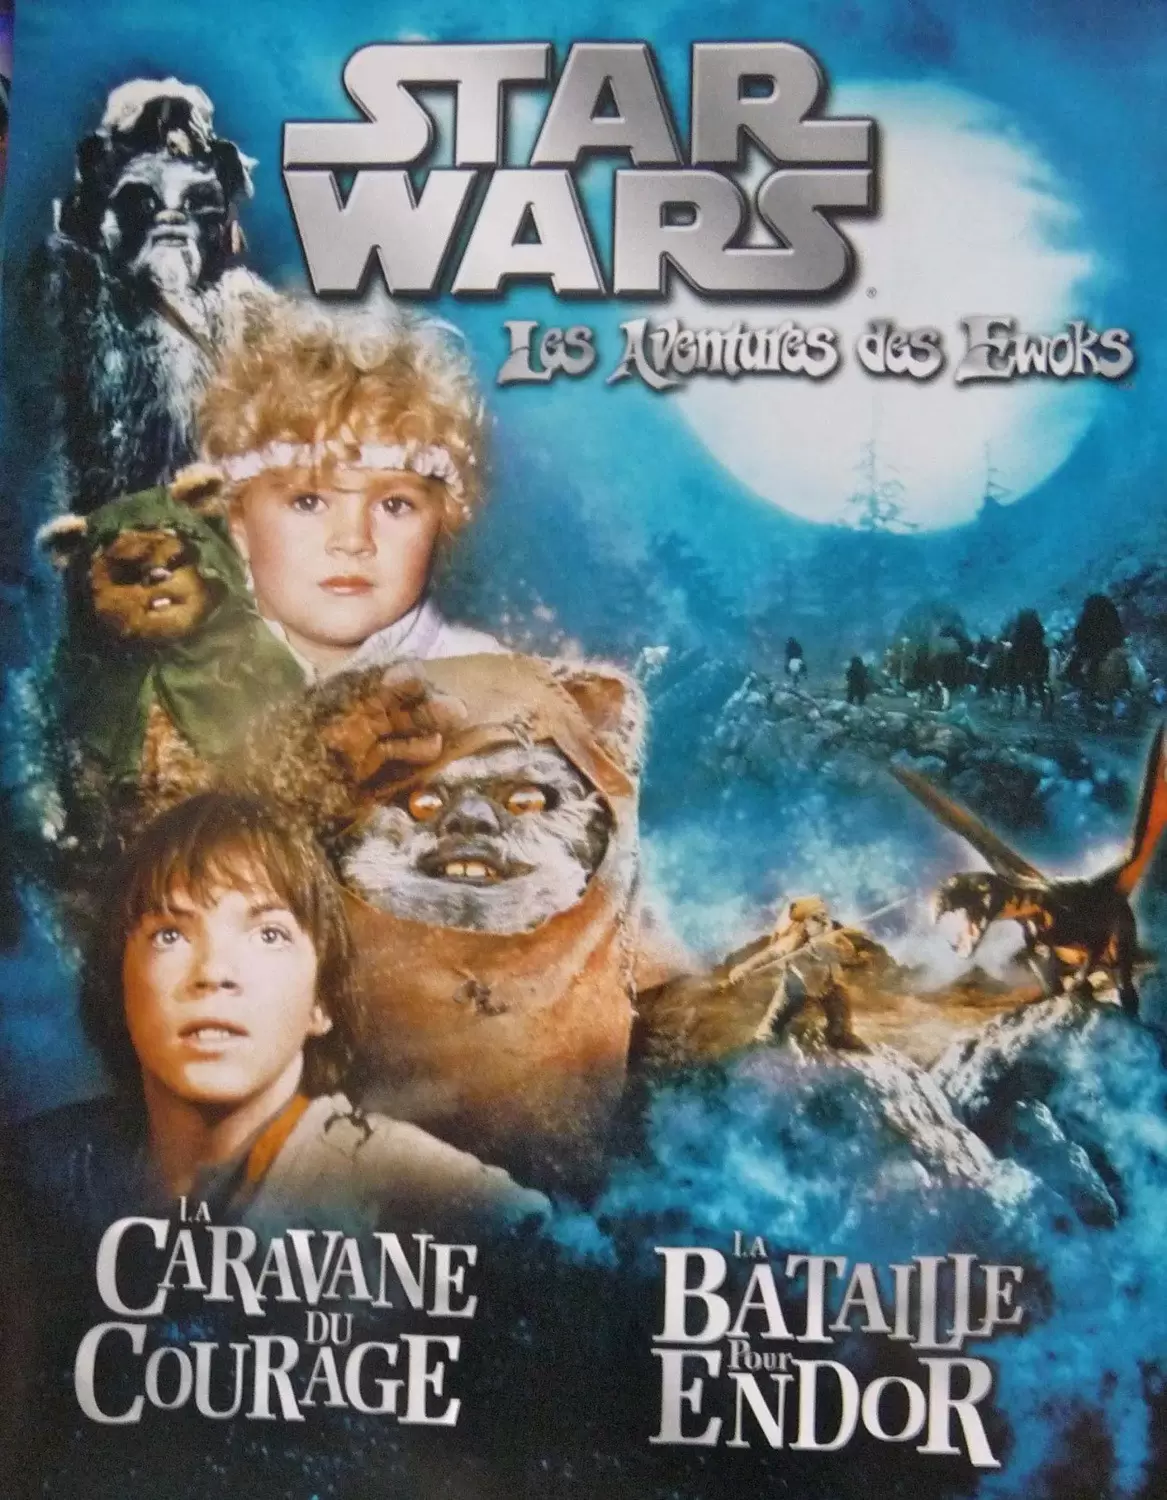 Star Wars - Les Aventures des Ewoks (La Caravane du Courage et La Bataille pour Endor)